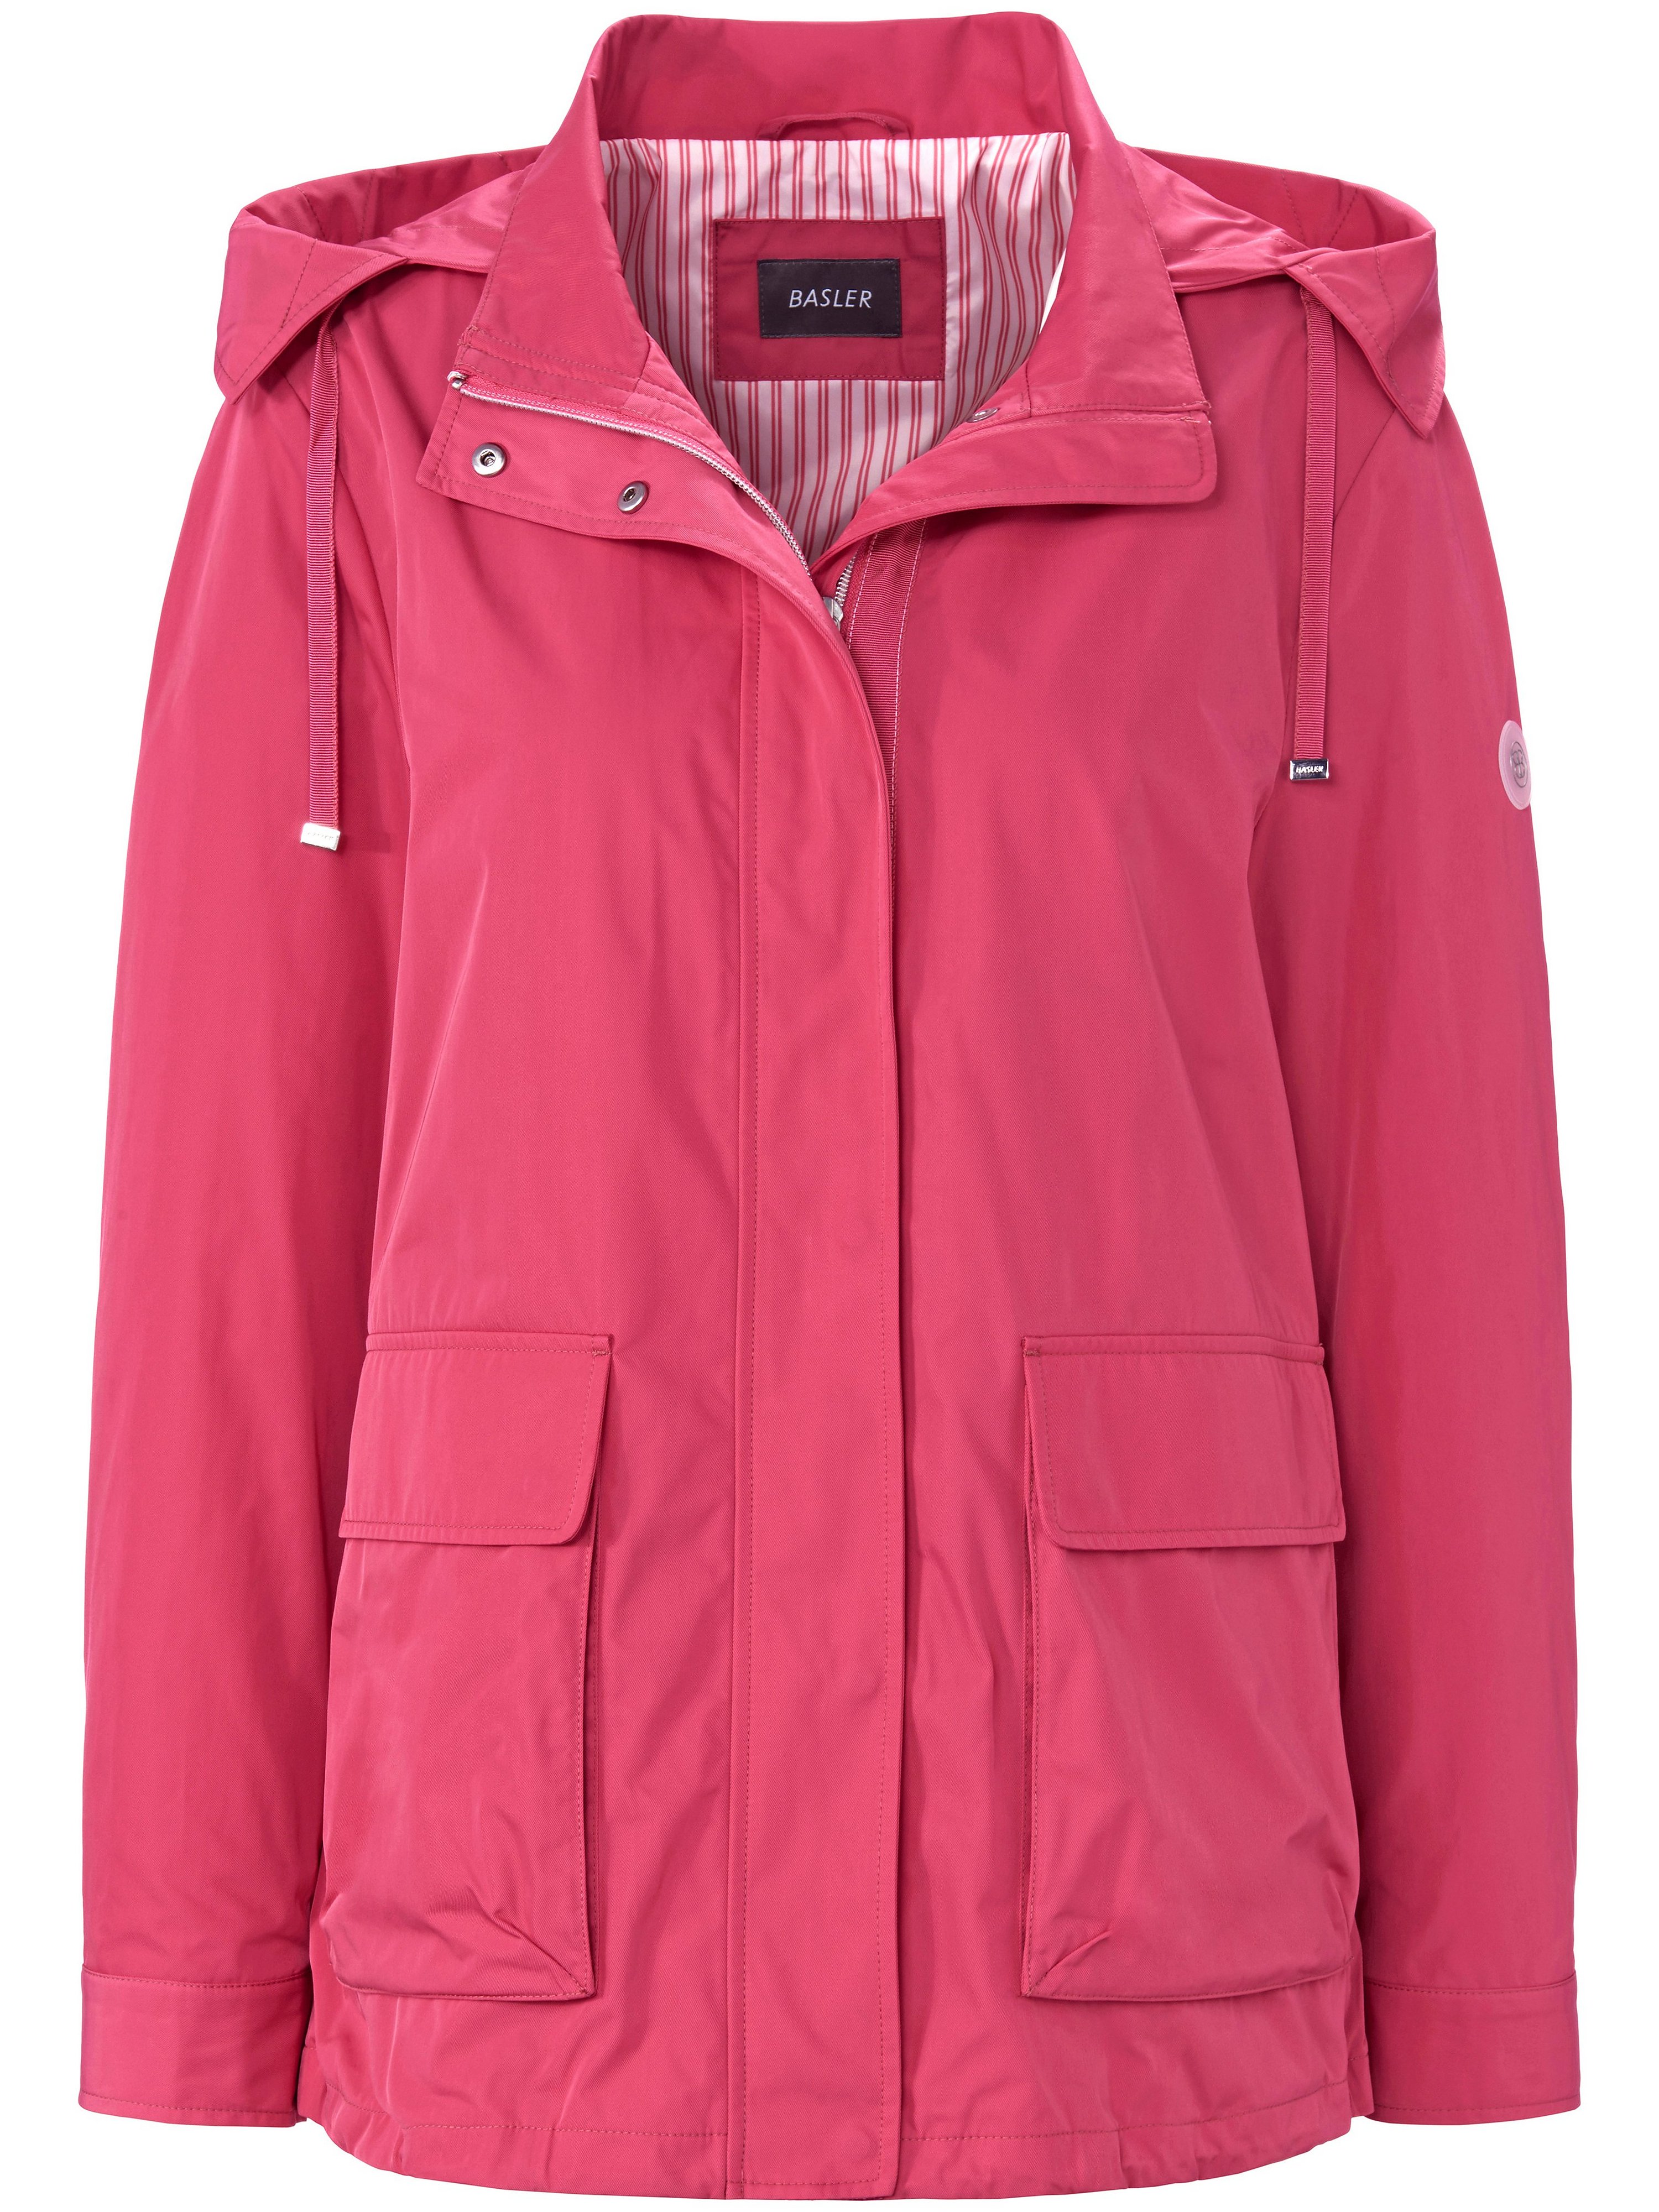 Jacket Basler bright pink